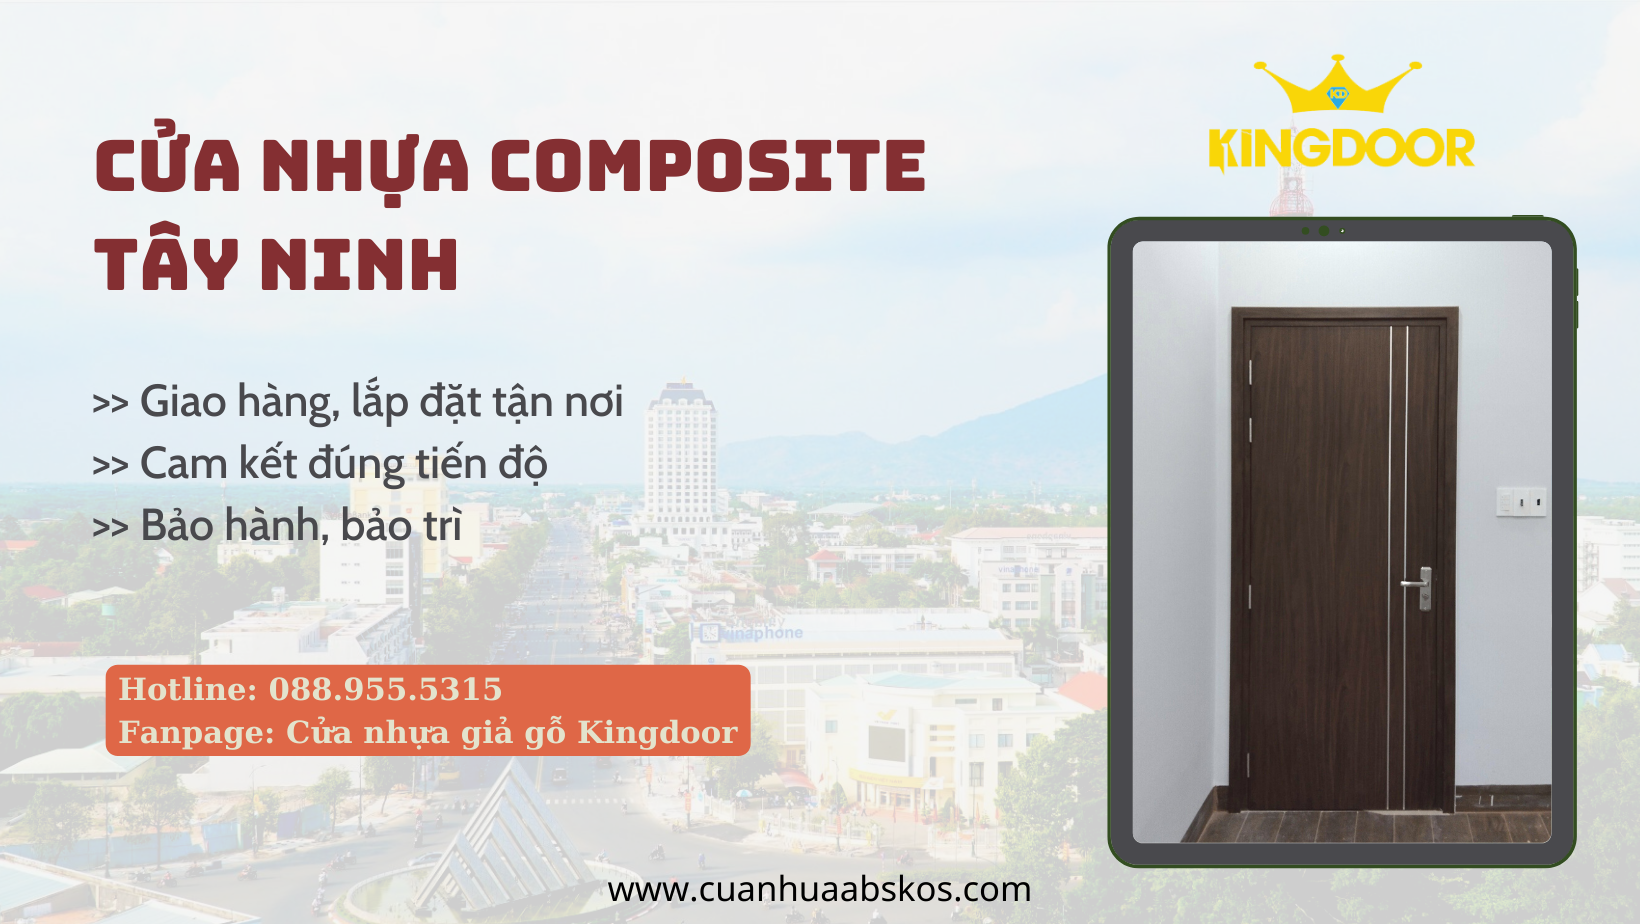 Cửa nhựa Composite Tây Ninh